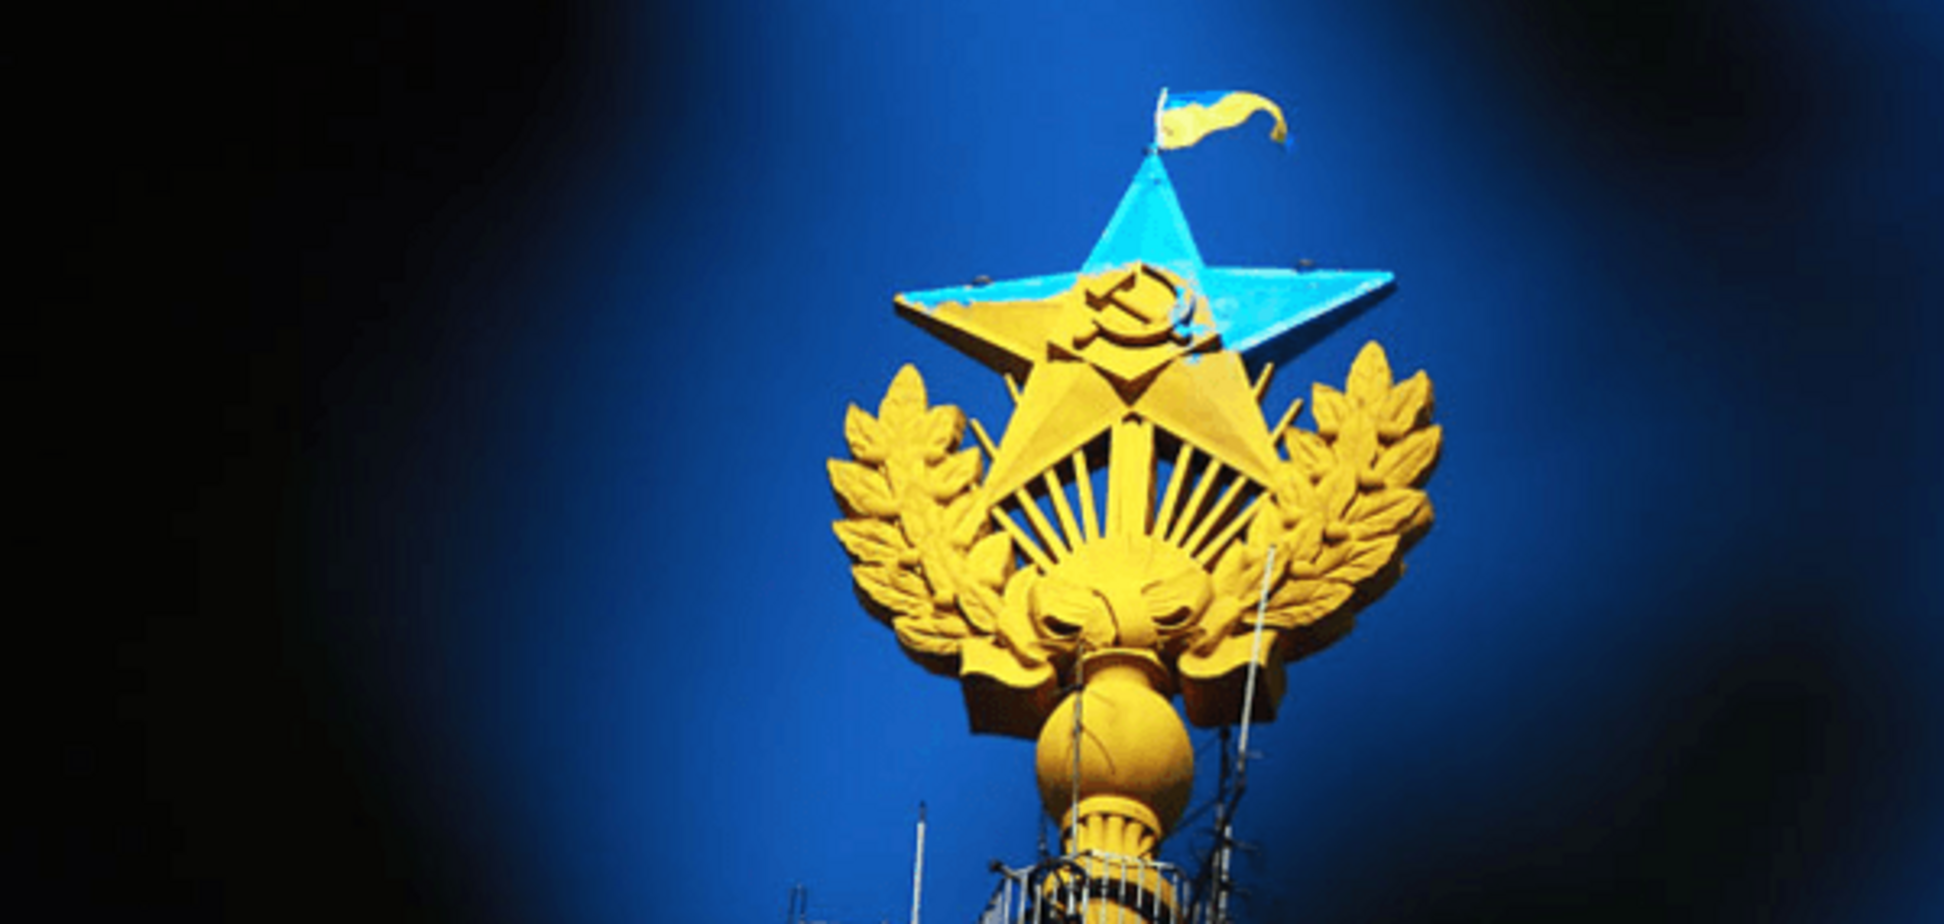 Перемога: руферам заплатят 2 млн рублей за сине-желтую звезду в центре Москвы